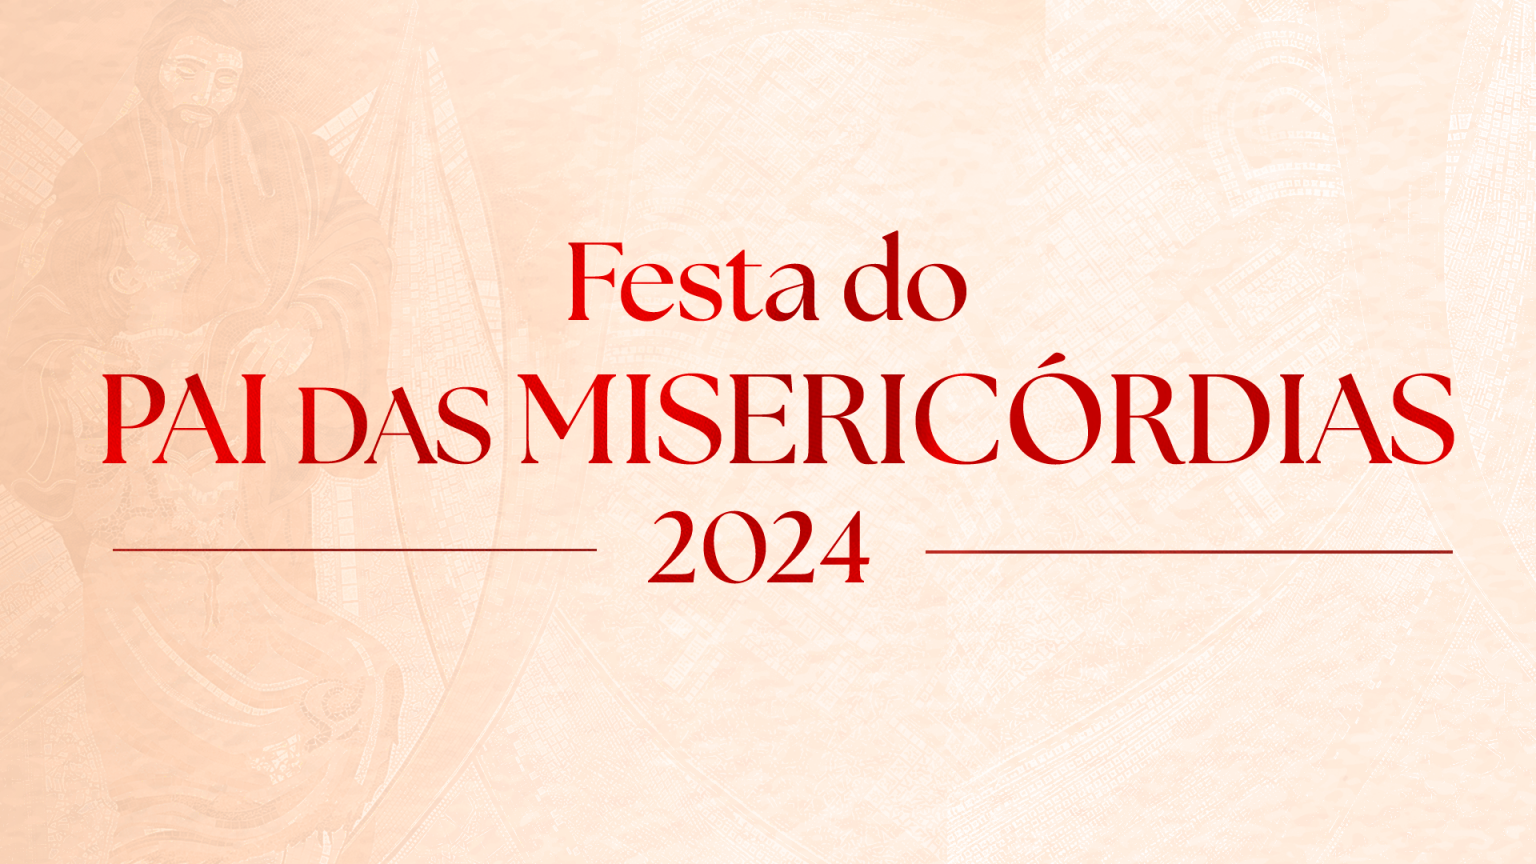 FESTA-DO-PAI-DAS-MISERICORDIAS-2024-EVENTOS512288-3-1536x864.png